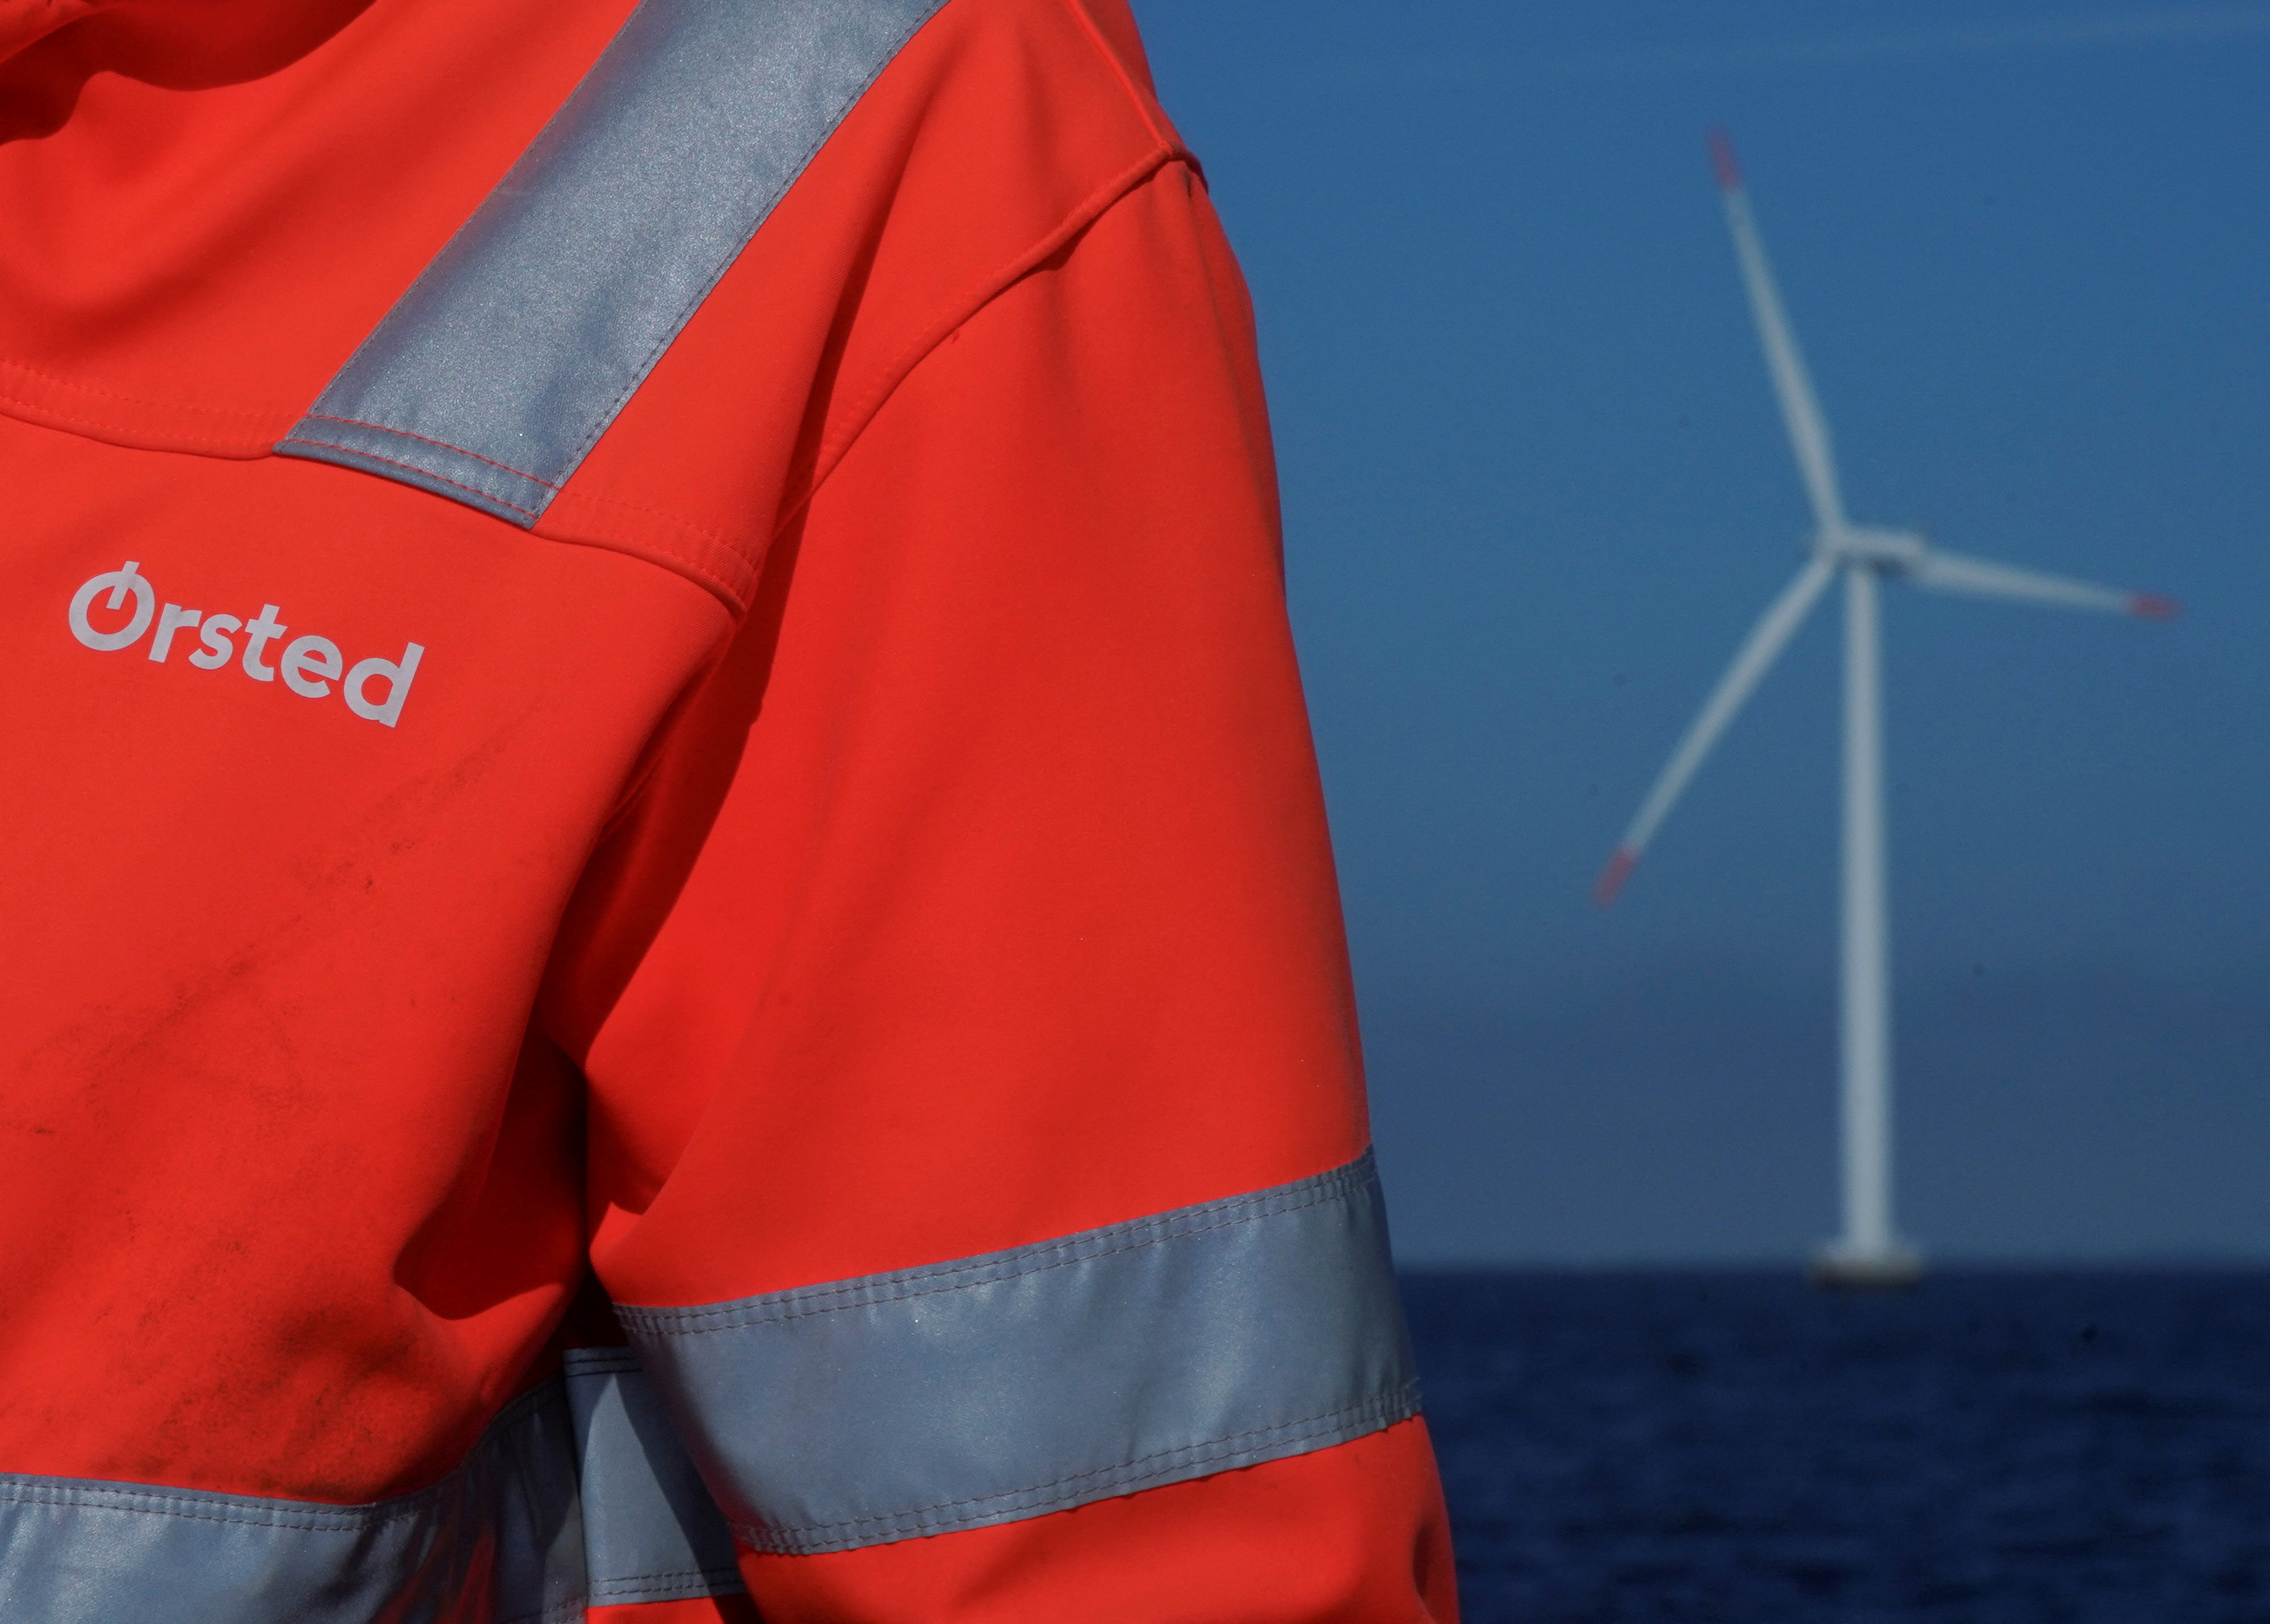 Le logo d'Orsted est visible sur la veste d'un employé du parc éolien offshore d'Orsted près de Nysted.